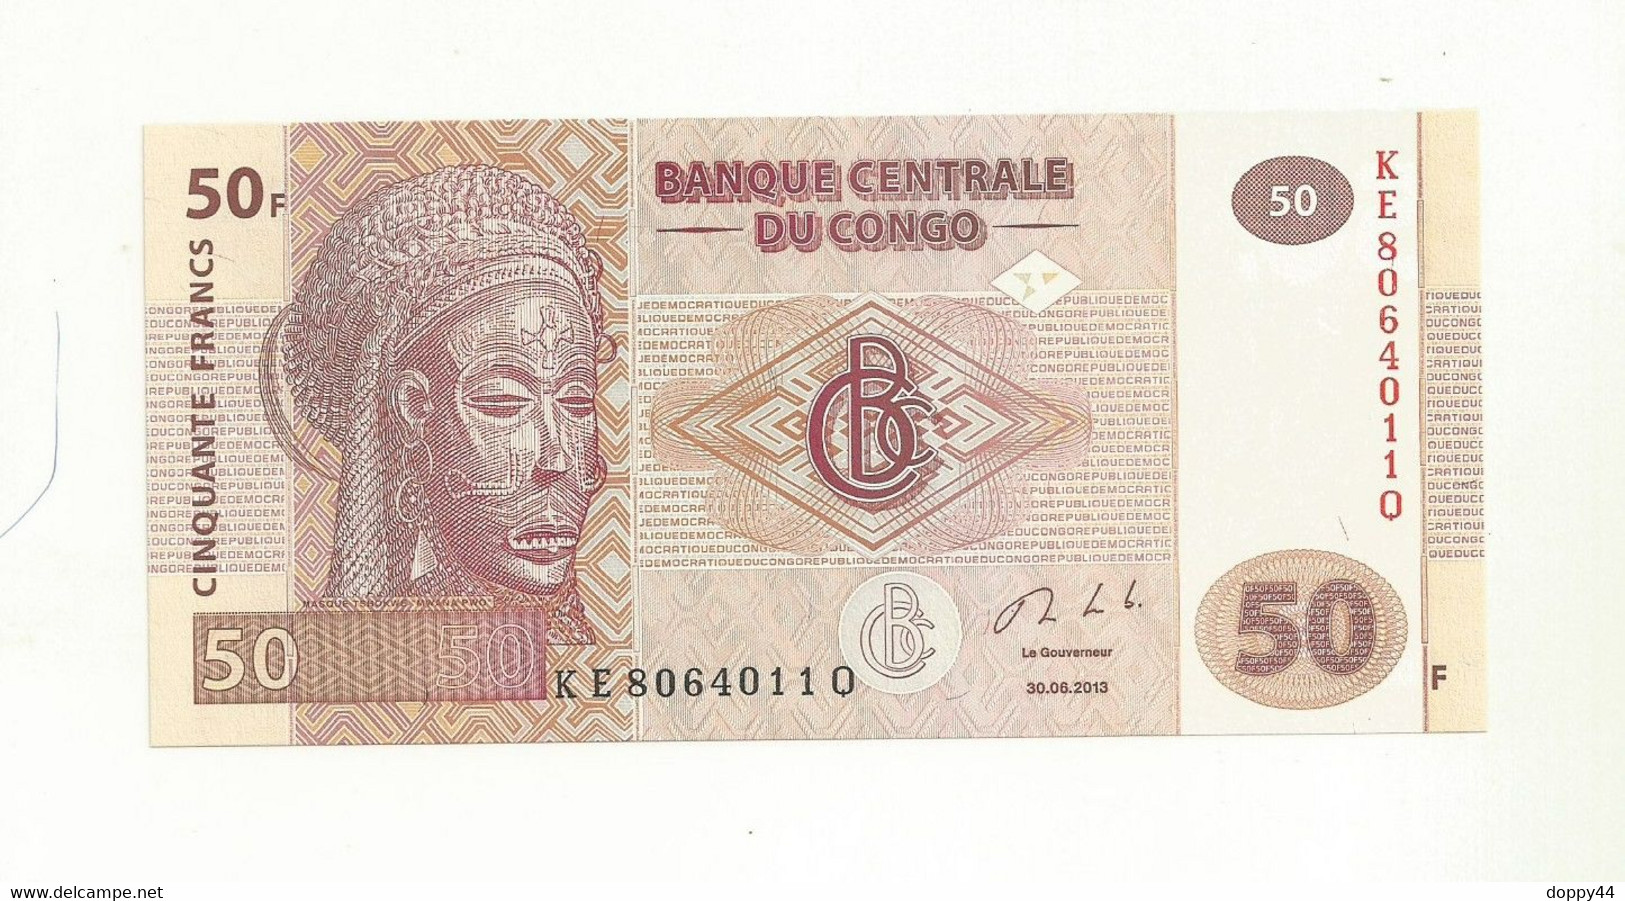 BILLET NEUF BANQUE CENTRALE DU CONGO 50 FRANCS EMIS EN 2013 SUPERBE. - République Du Congo (Congo-Brazzaville)